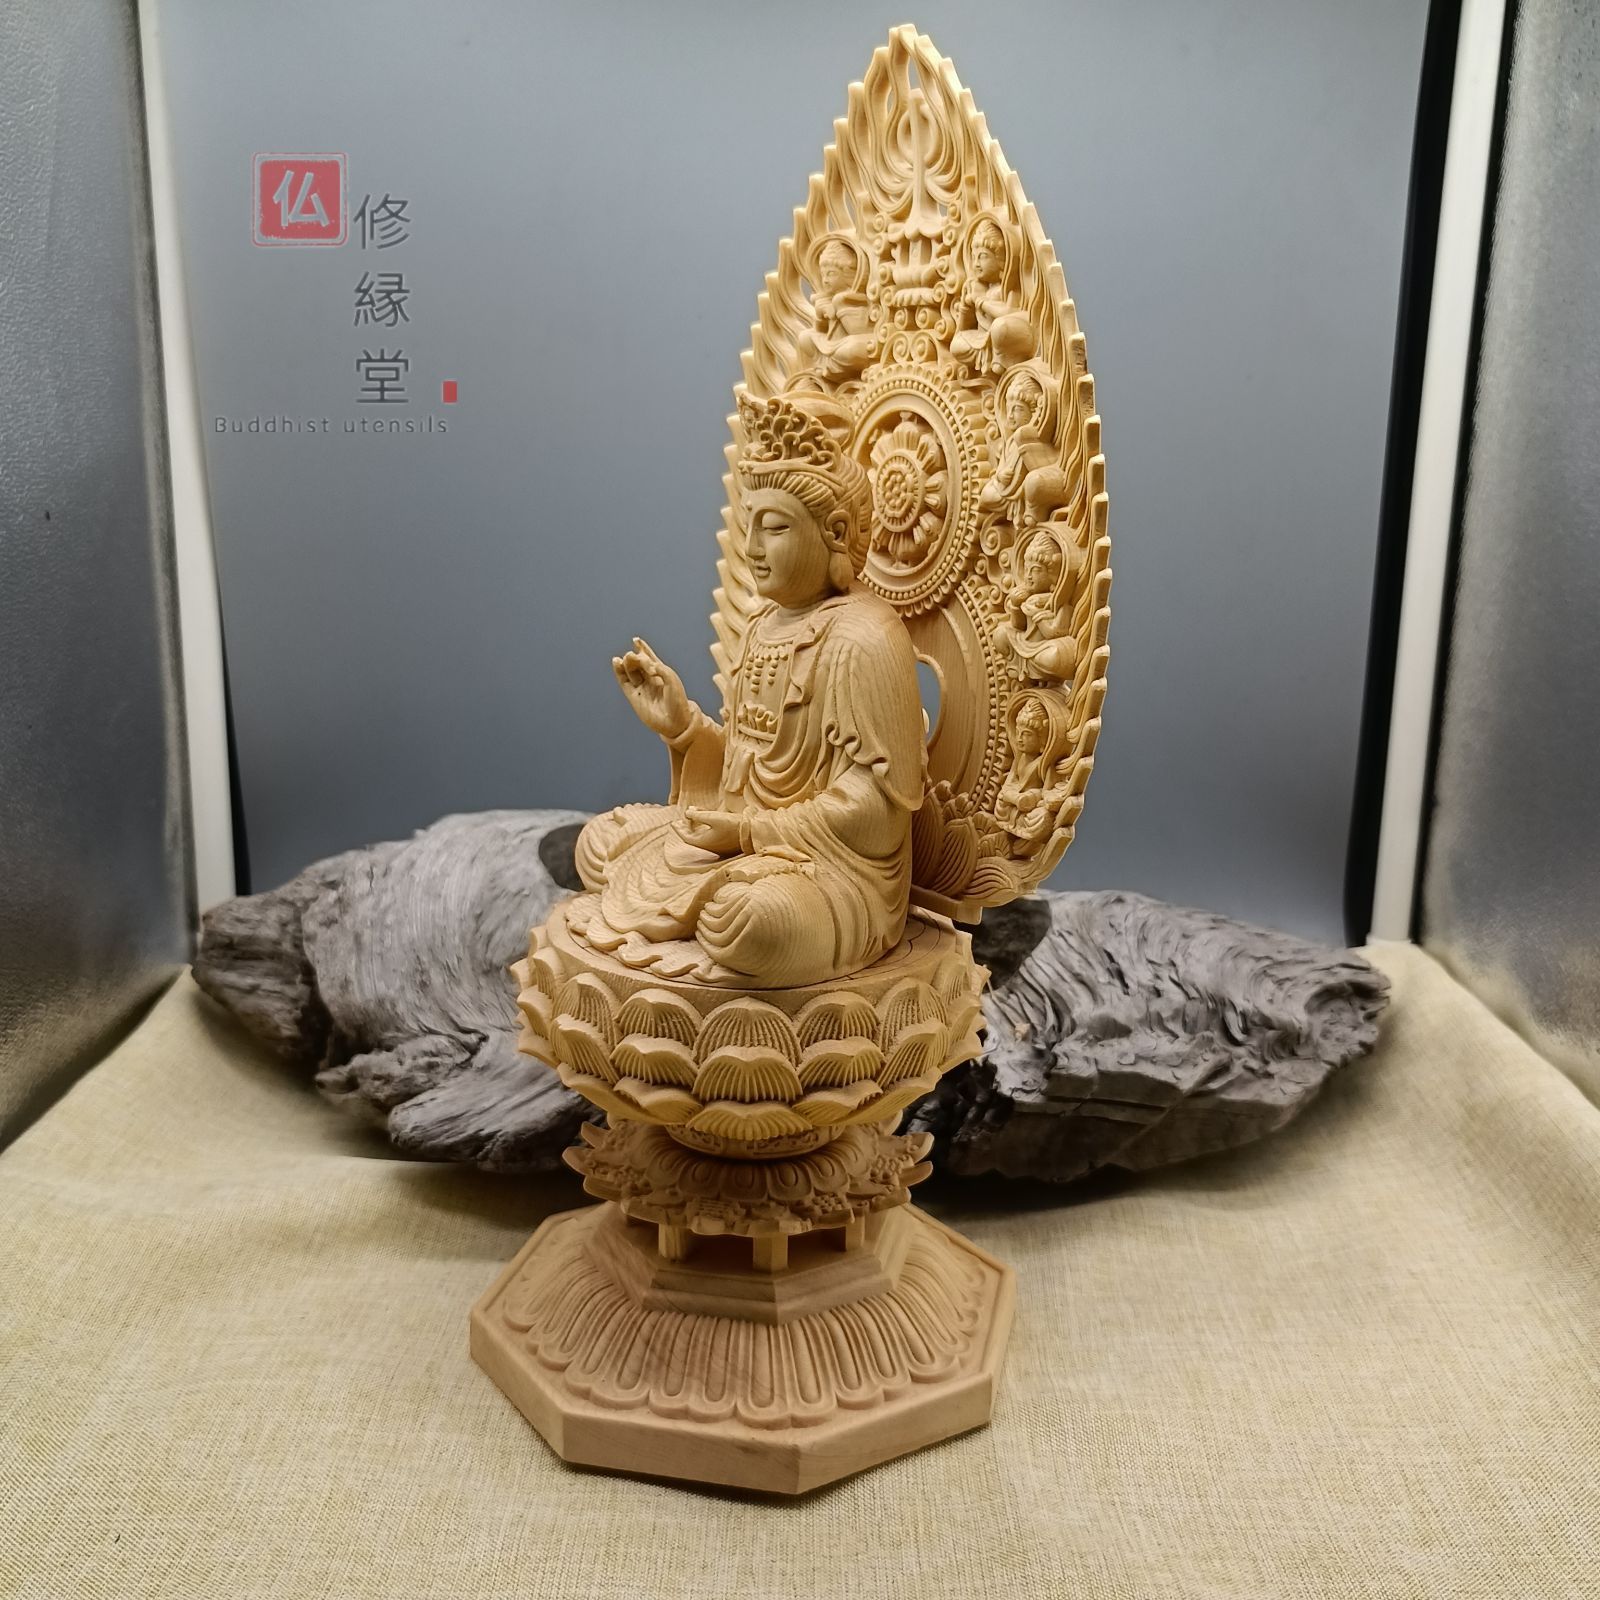 仏像 木彫 観世音菩薩座像 彫刻 一刀彫 天然木檜材 仏教工芸品 最大44